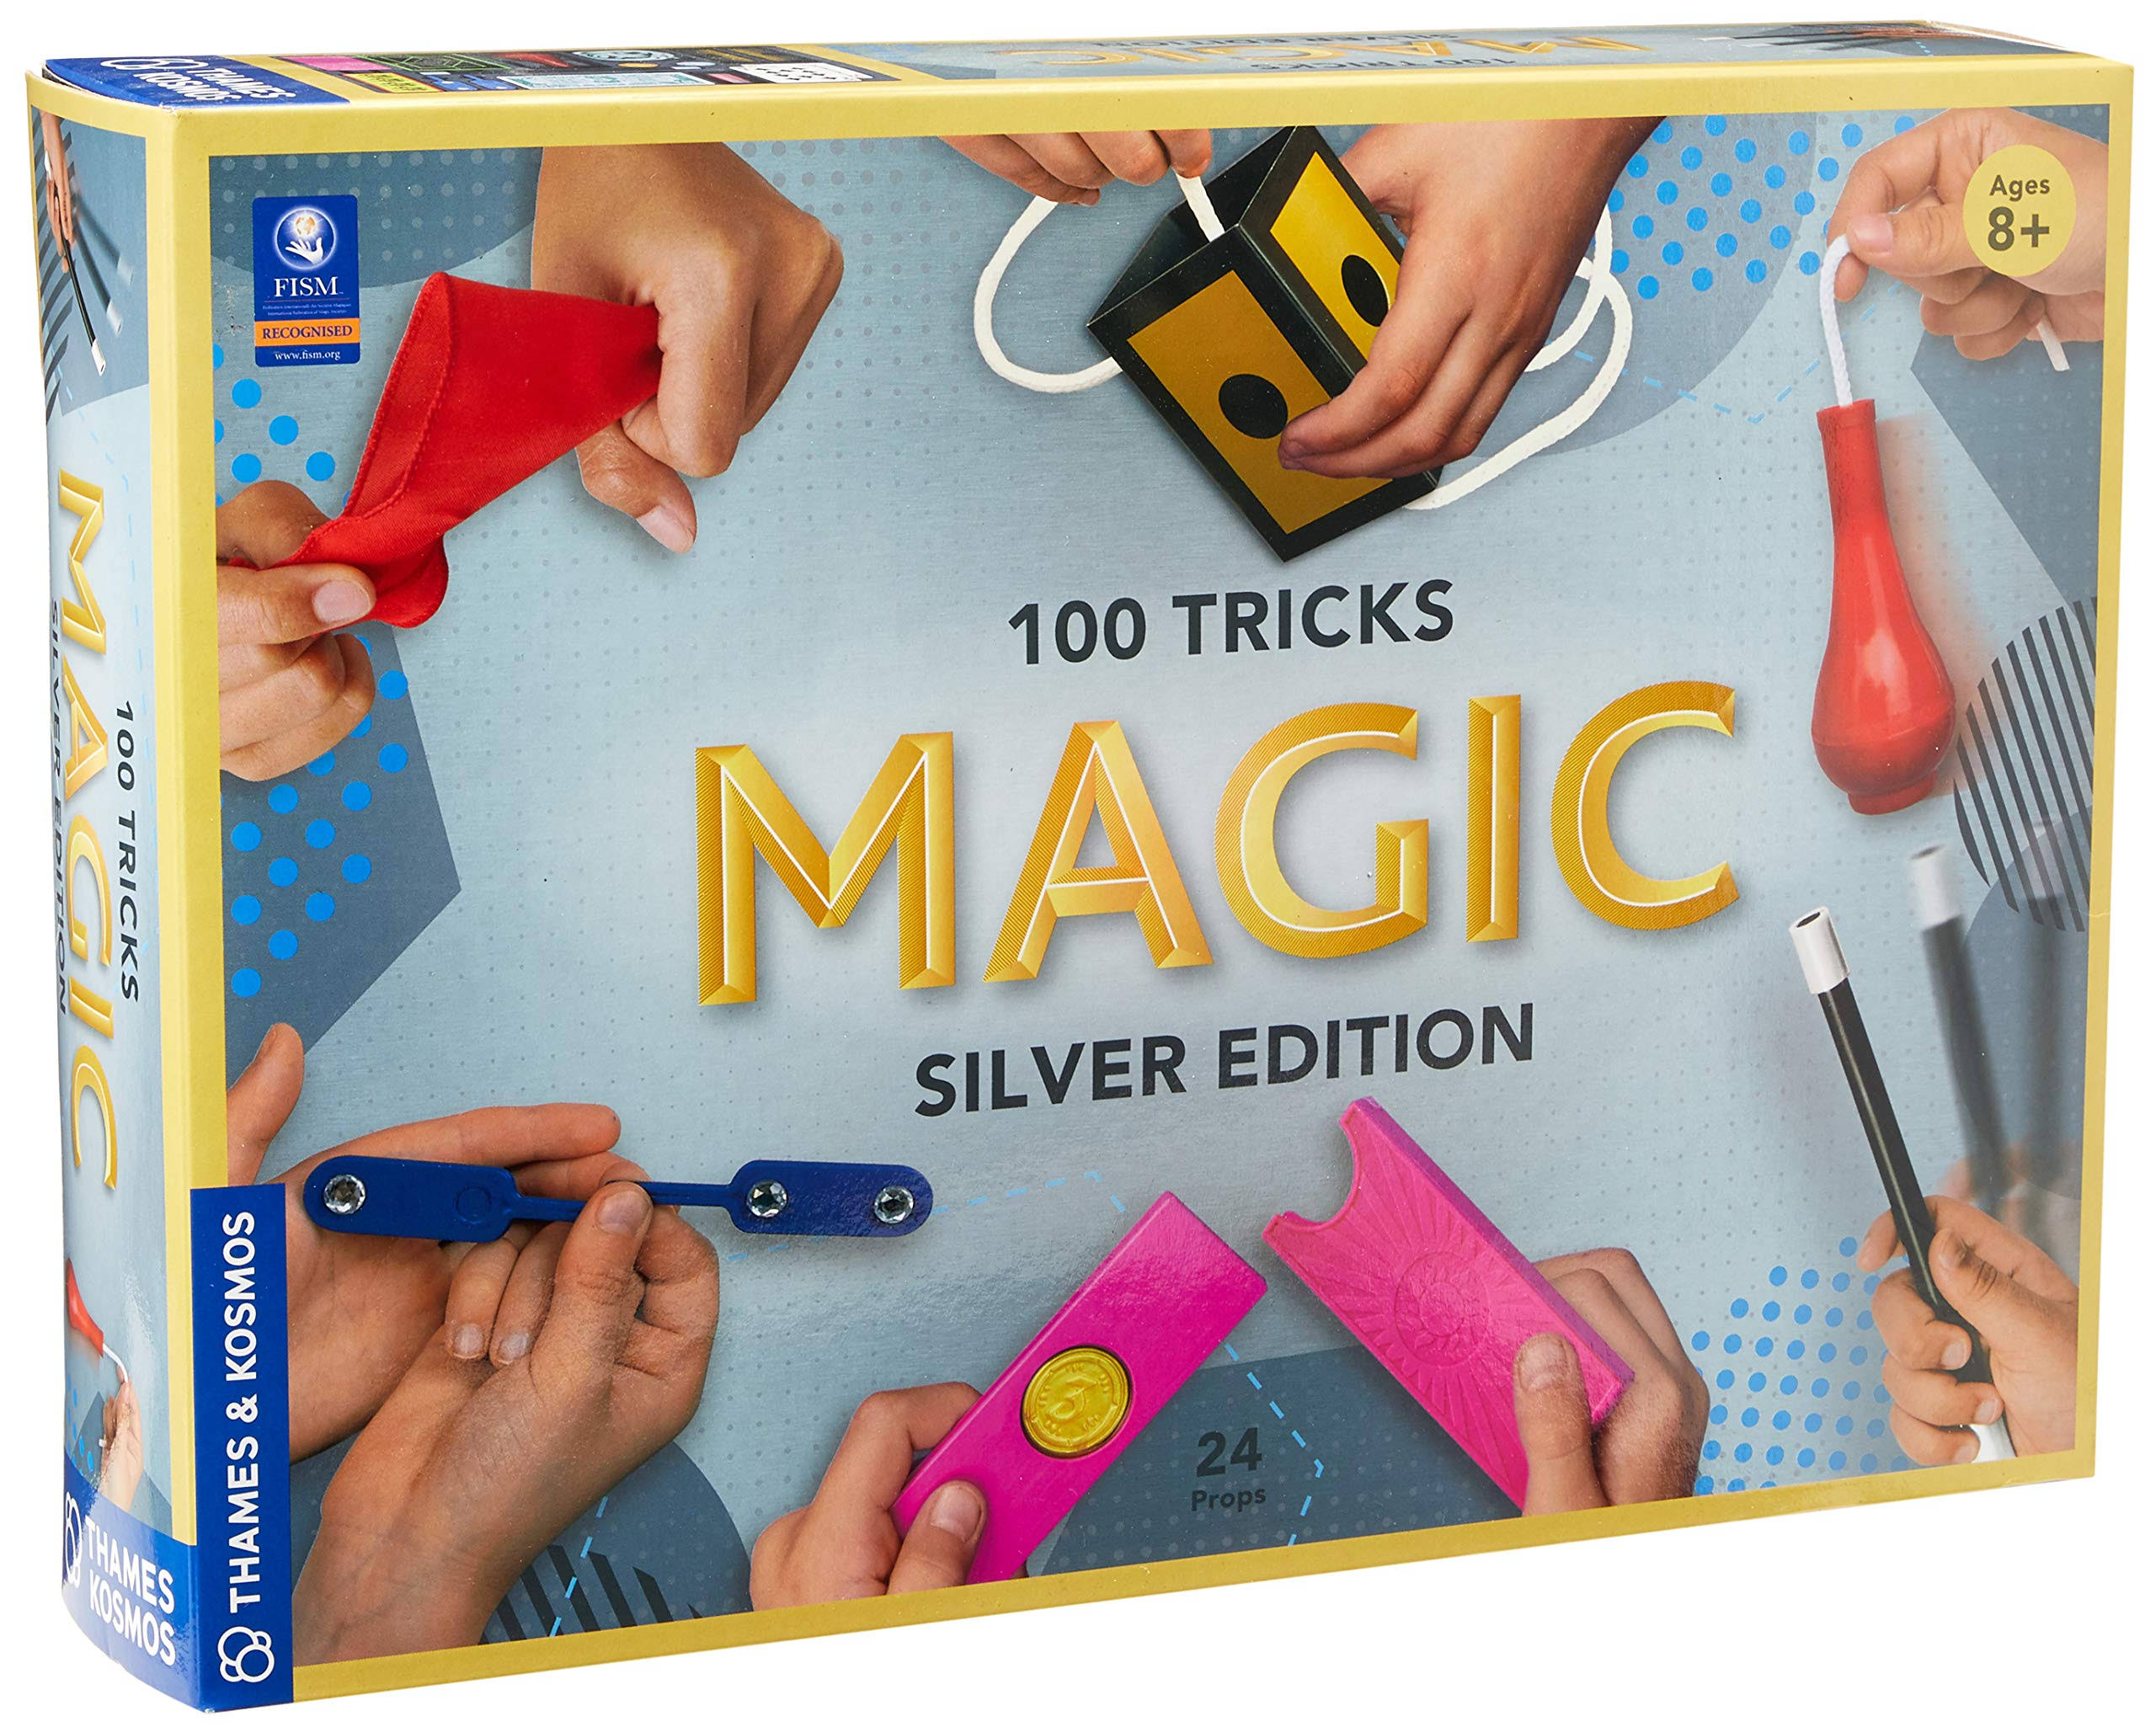 Thames & Kosmos Magic Silver Edition Playset